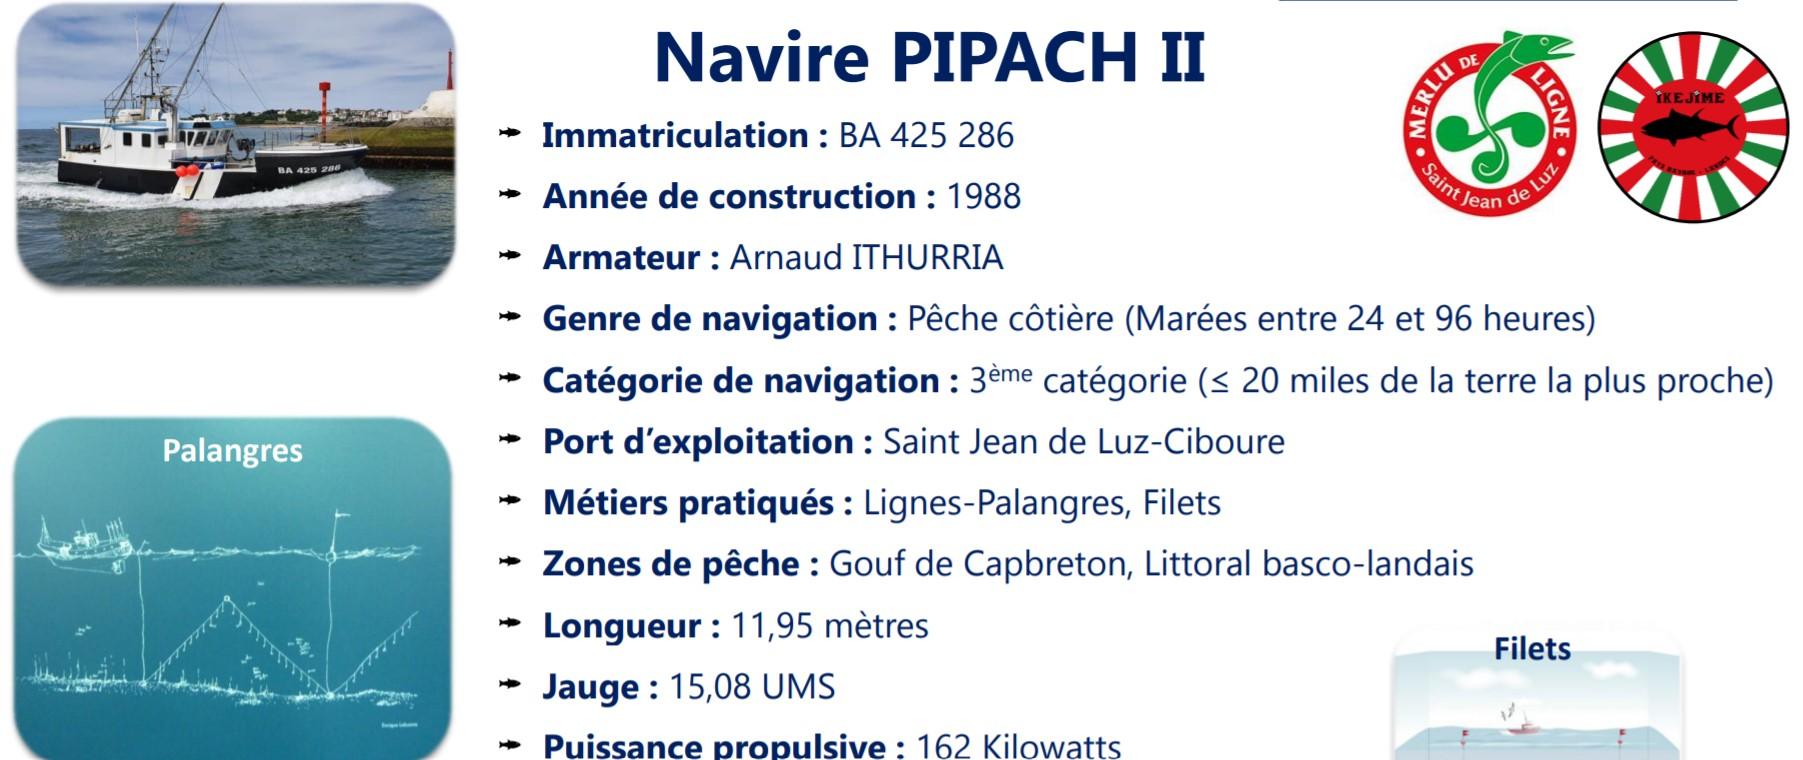 Pipach ii ba425286